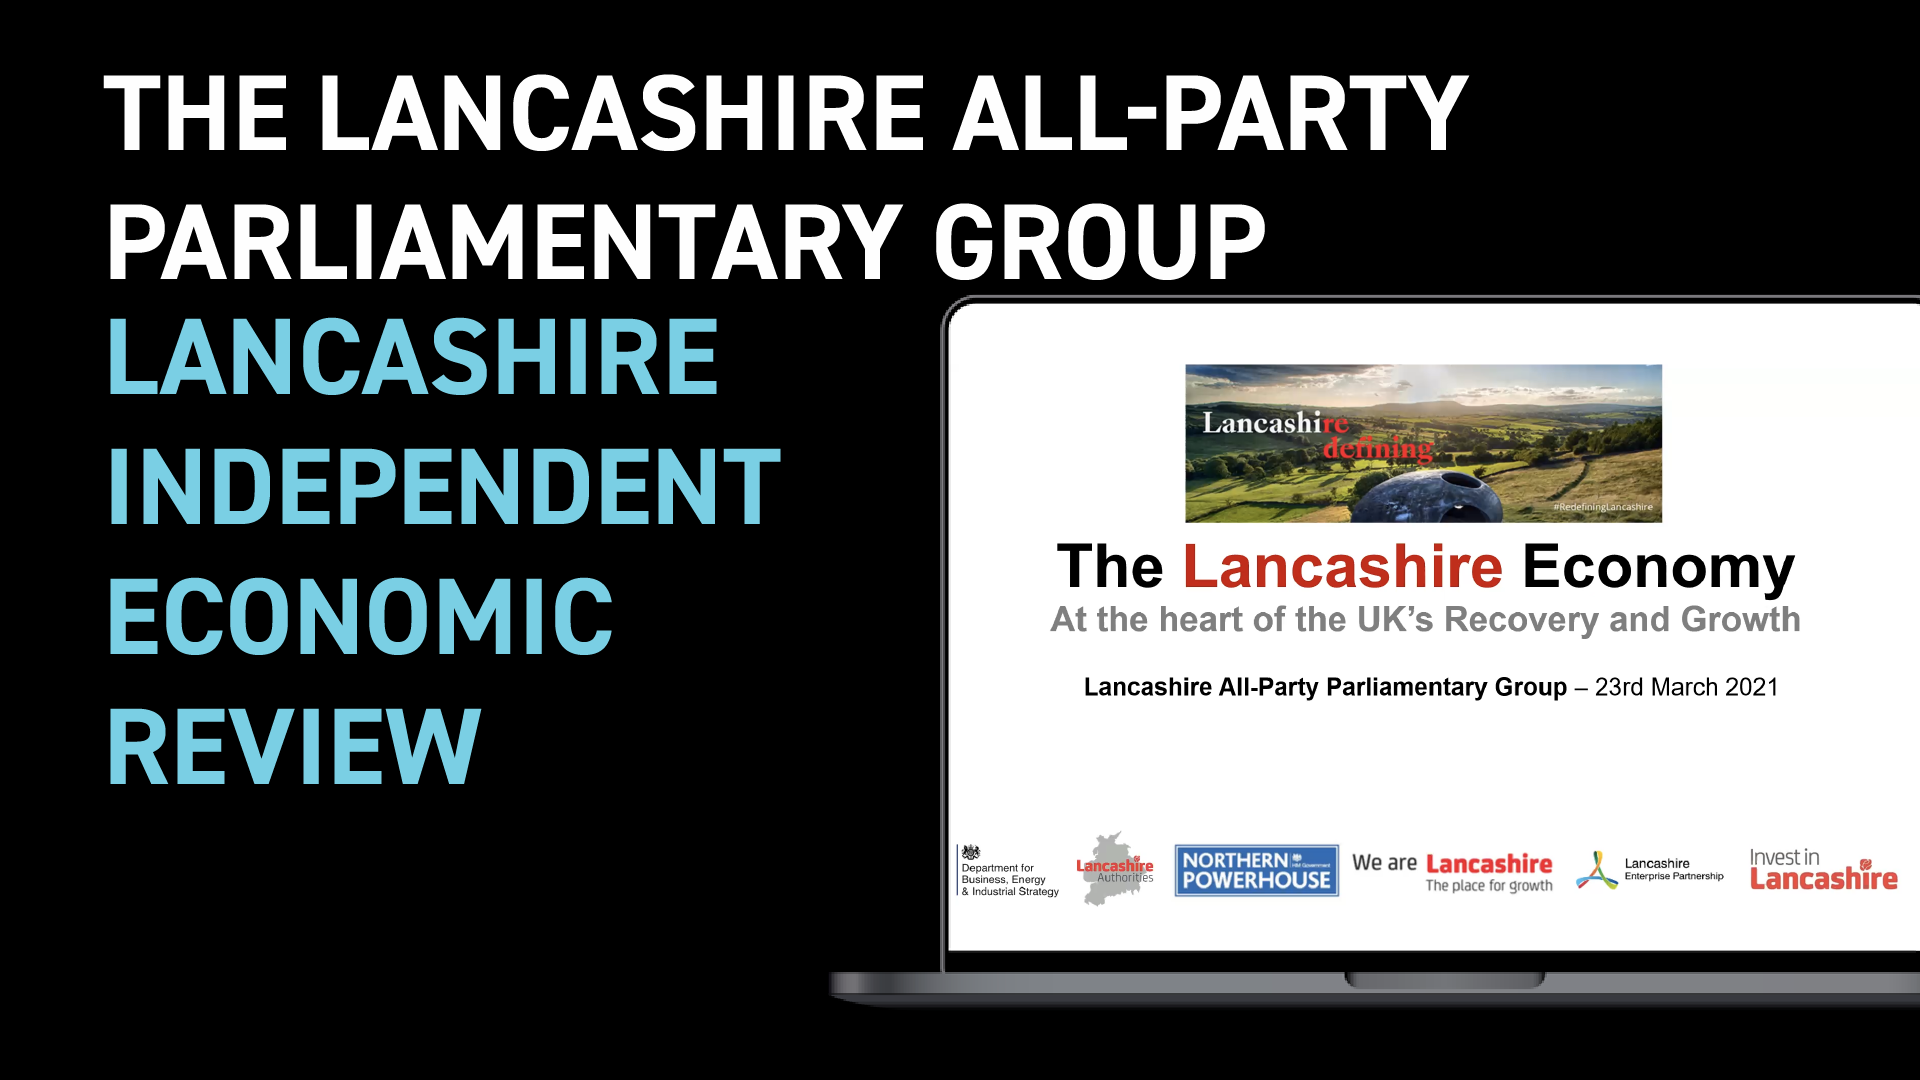 Lancashire APPG Meeting March 2021 | Lancashire Independent Economic Review